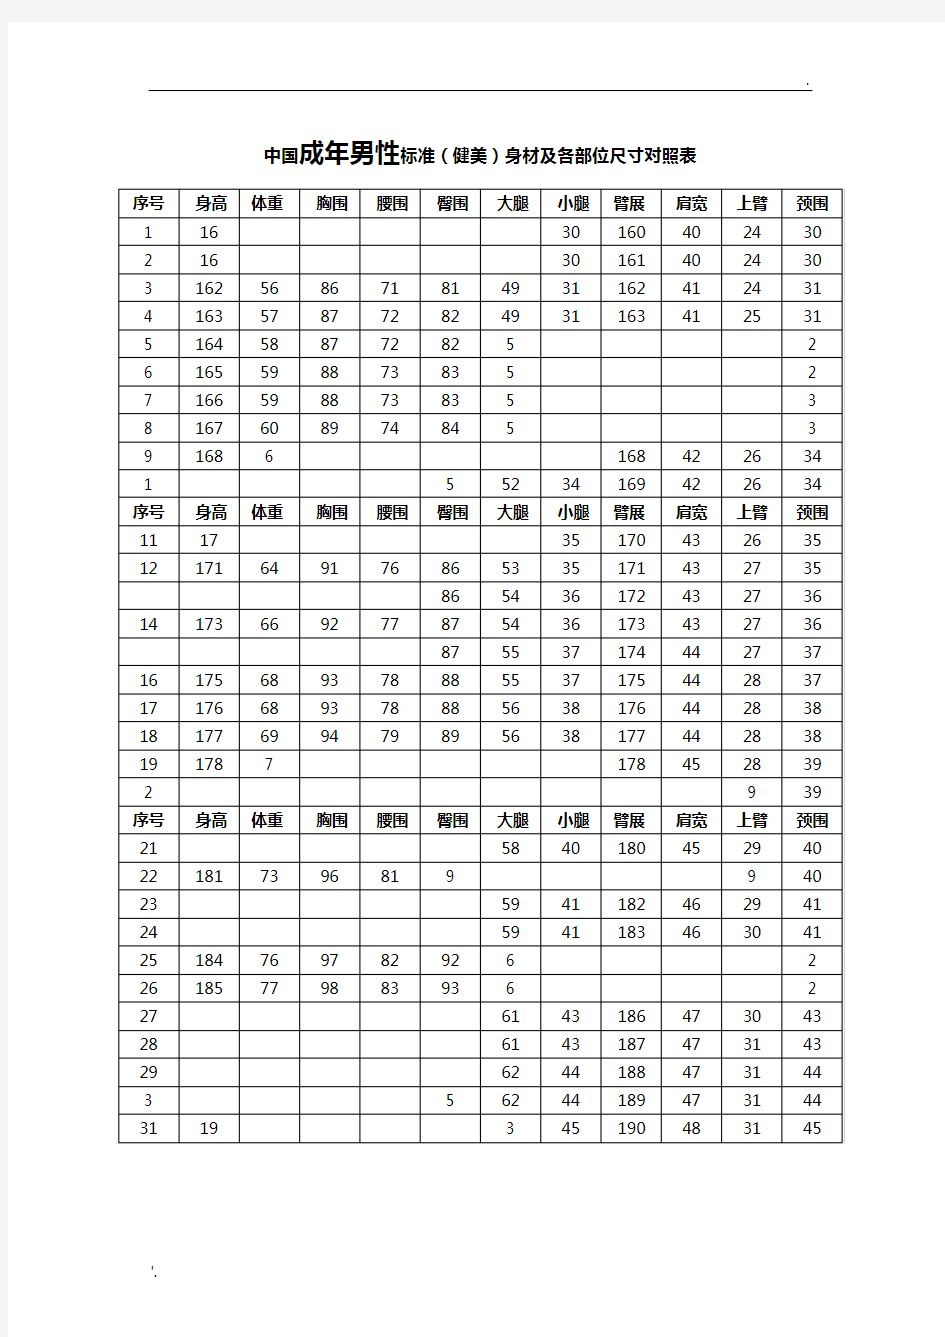 中国成年人标准(健美)身材及各部位尺寸对照表(包括男性与女性)